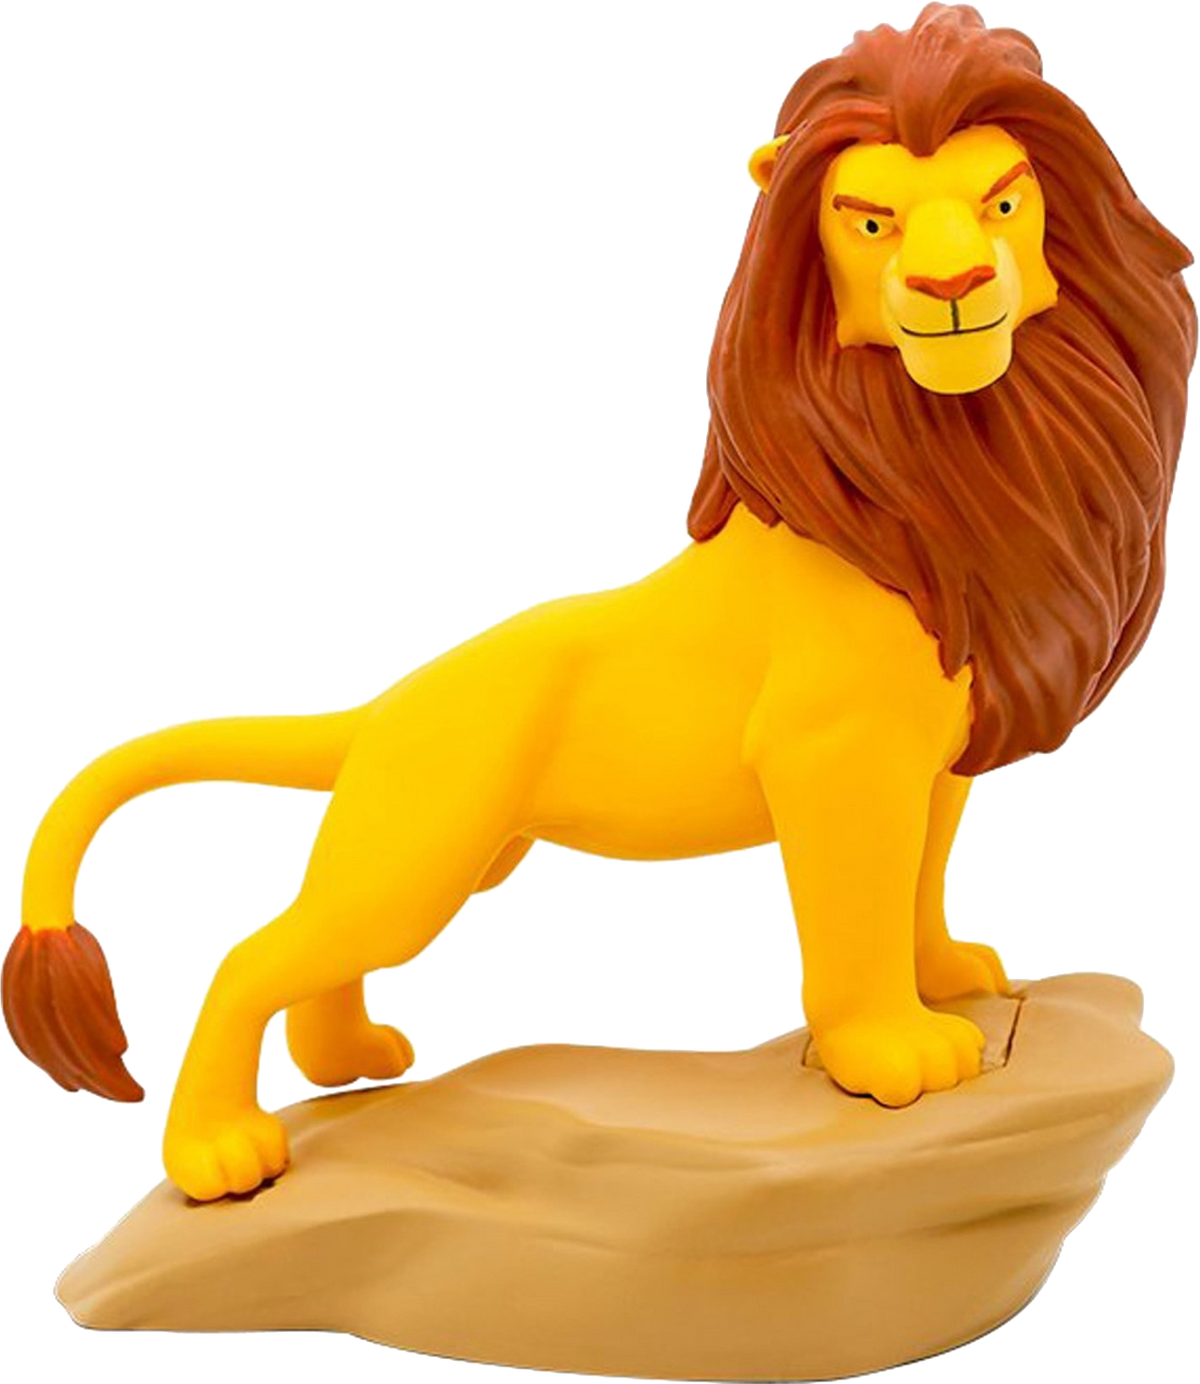 Tonies Disney Der König der Löwen Hörfigur - Ohne Vertrag